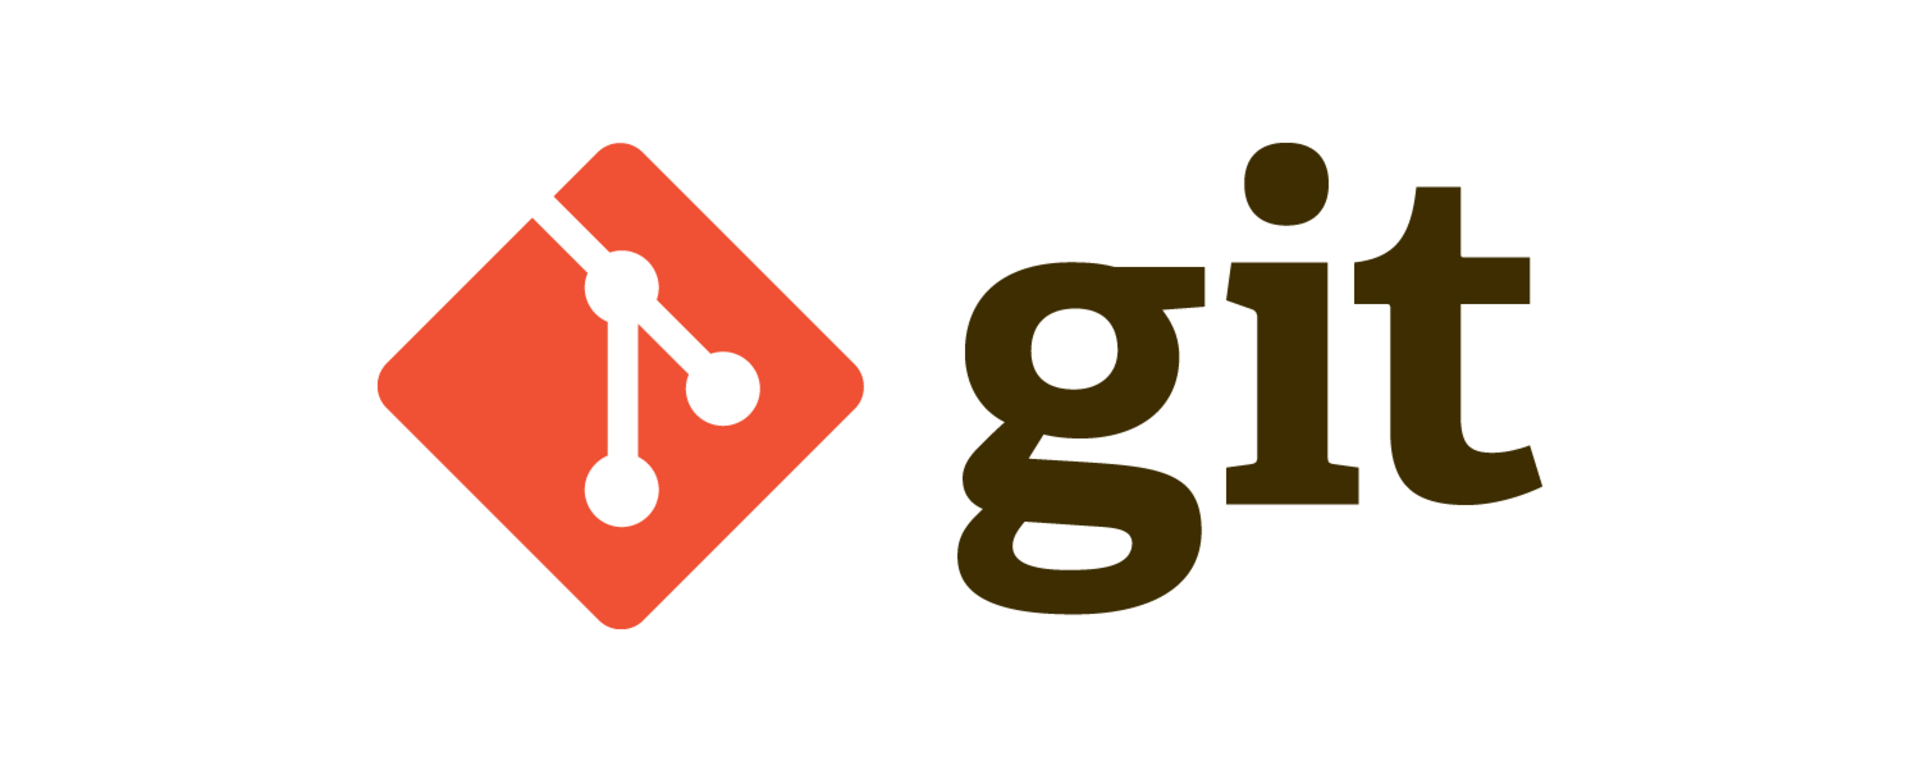 Git - logo